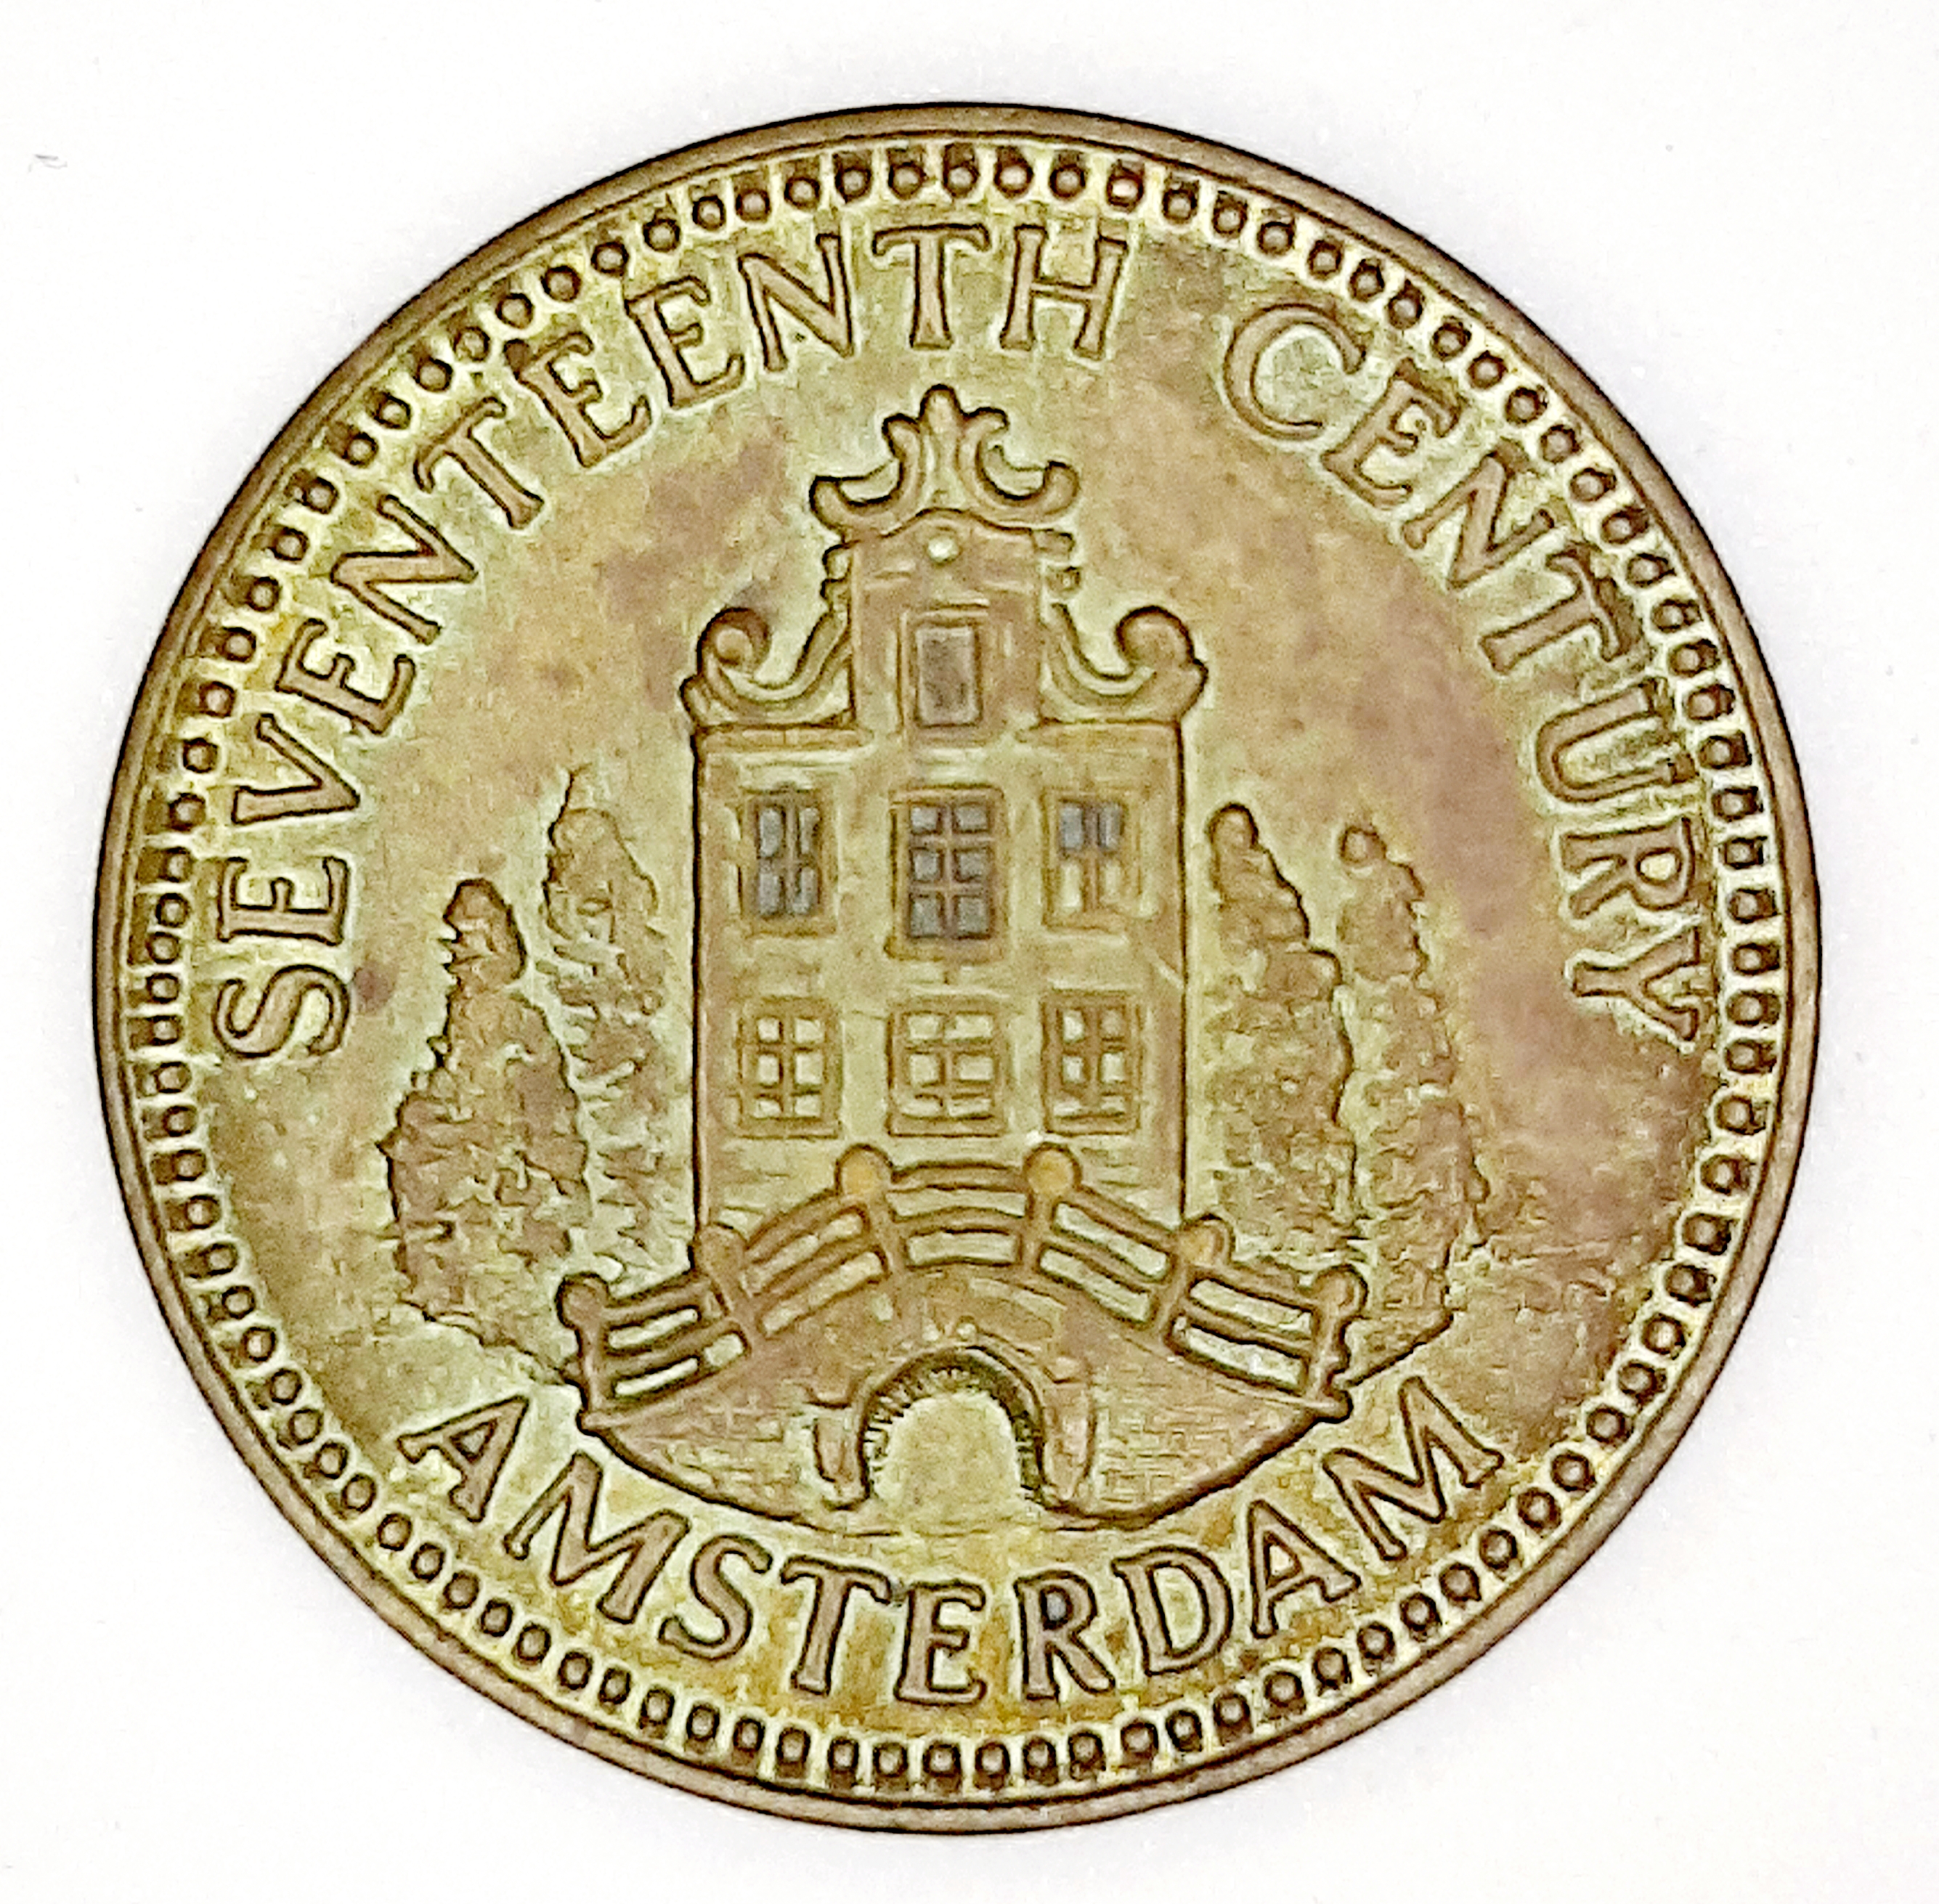 Bank of Amsterdam - Wikipedia